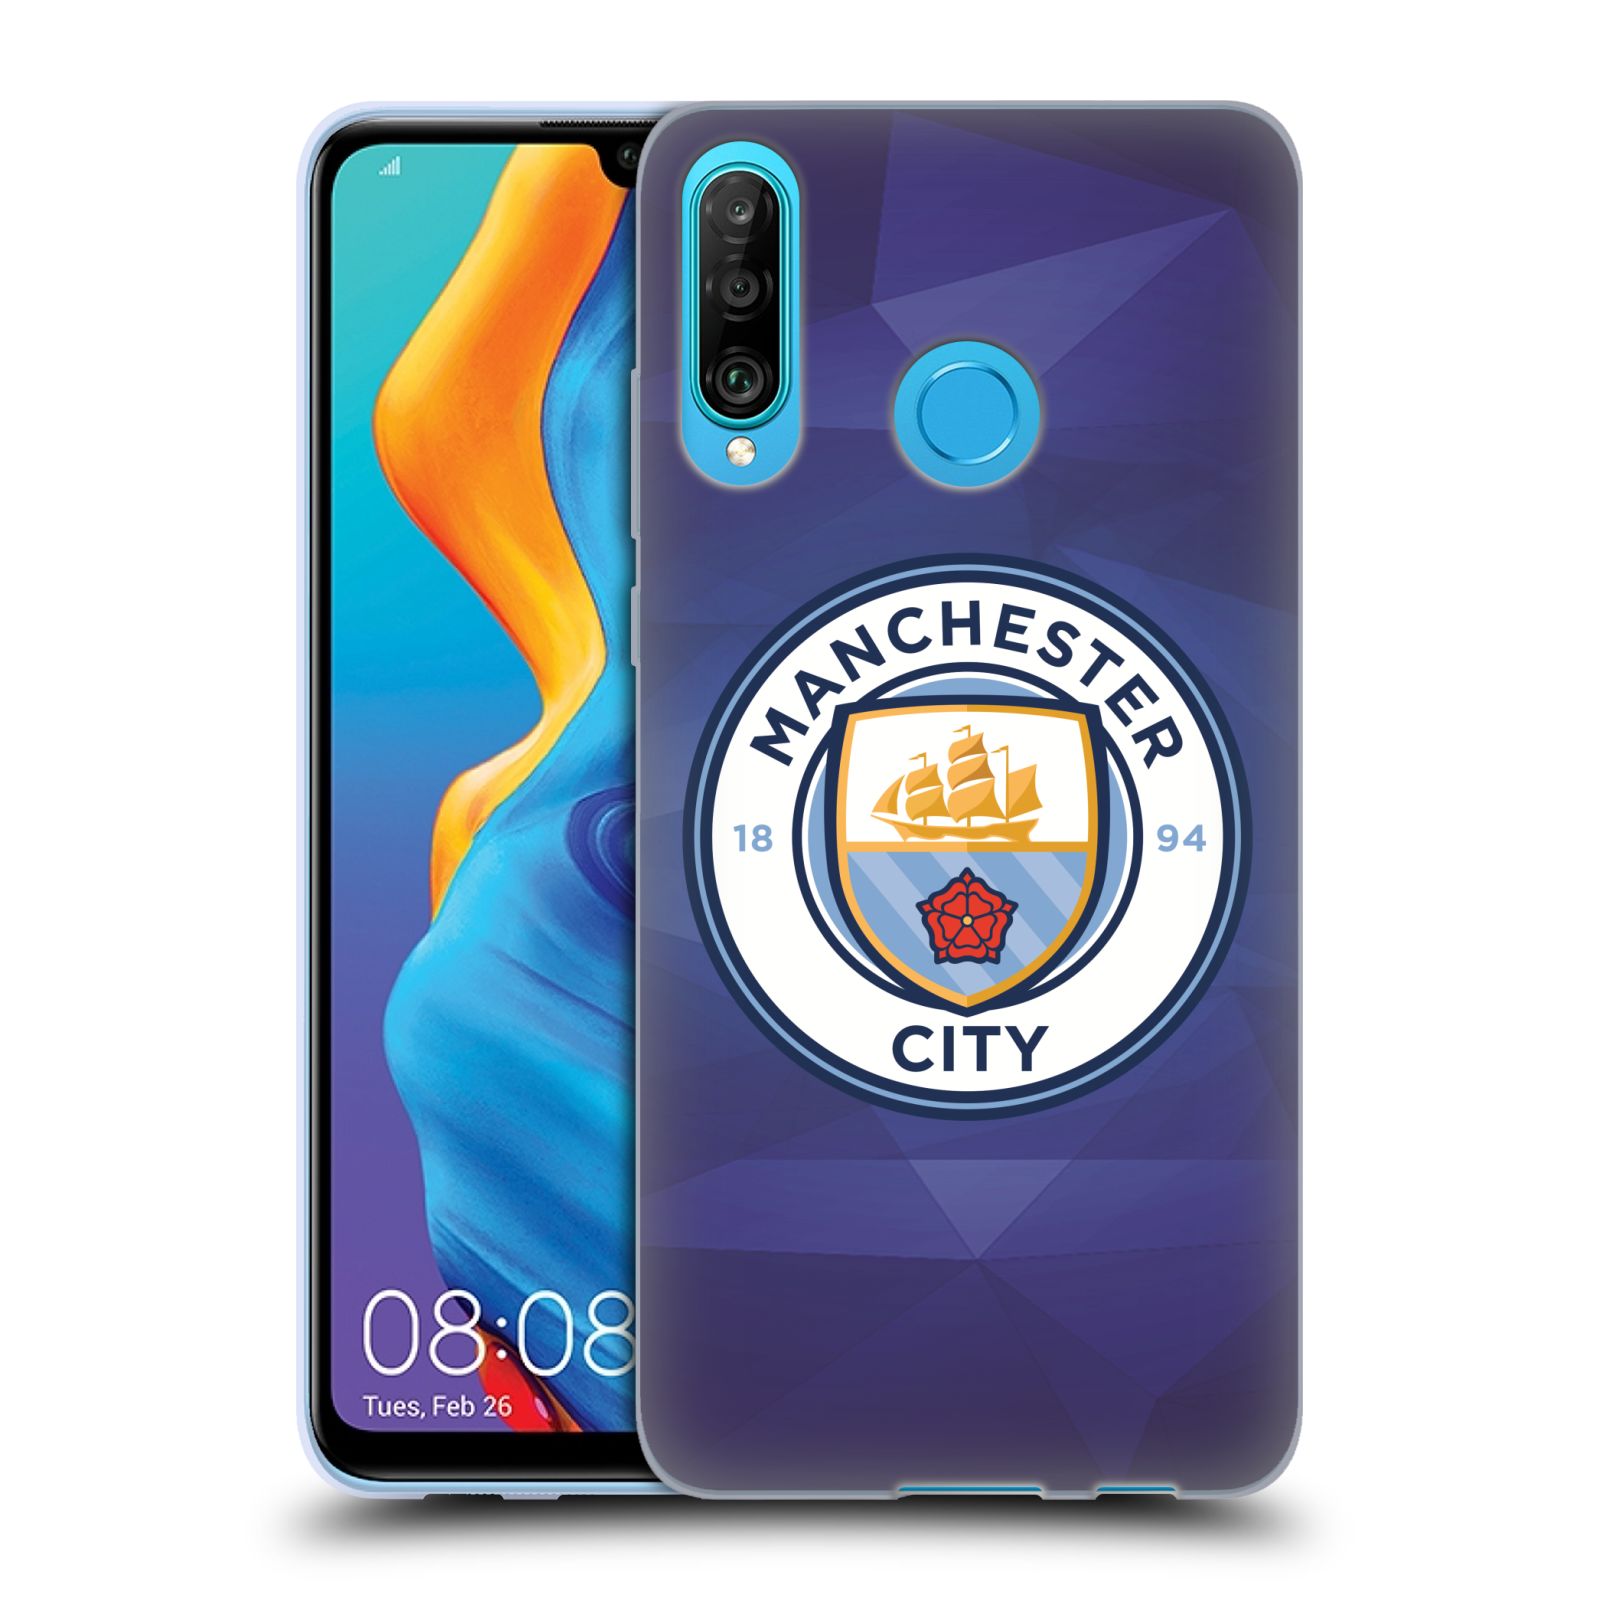 Silikonové pouzdro na mobil Huawei P30 Lite - Head Case - Manchester City FC - Modré nové logo (Silikonový kryt, obal, pouzdro na mobilní telefon Huawei P30 Lite Dual Sim (MAR-L01A, MAR-L21A, MAR-LX1A) s motivem Manchester City FC - Modré nové logo)